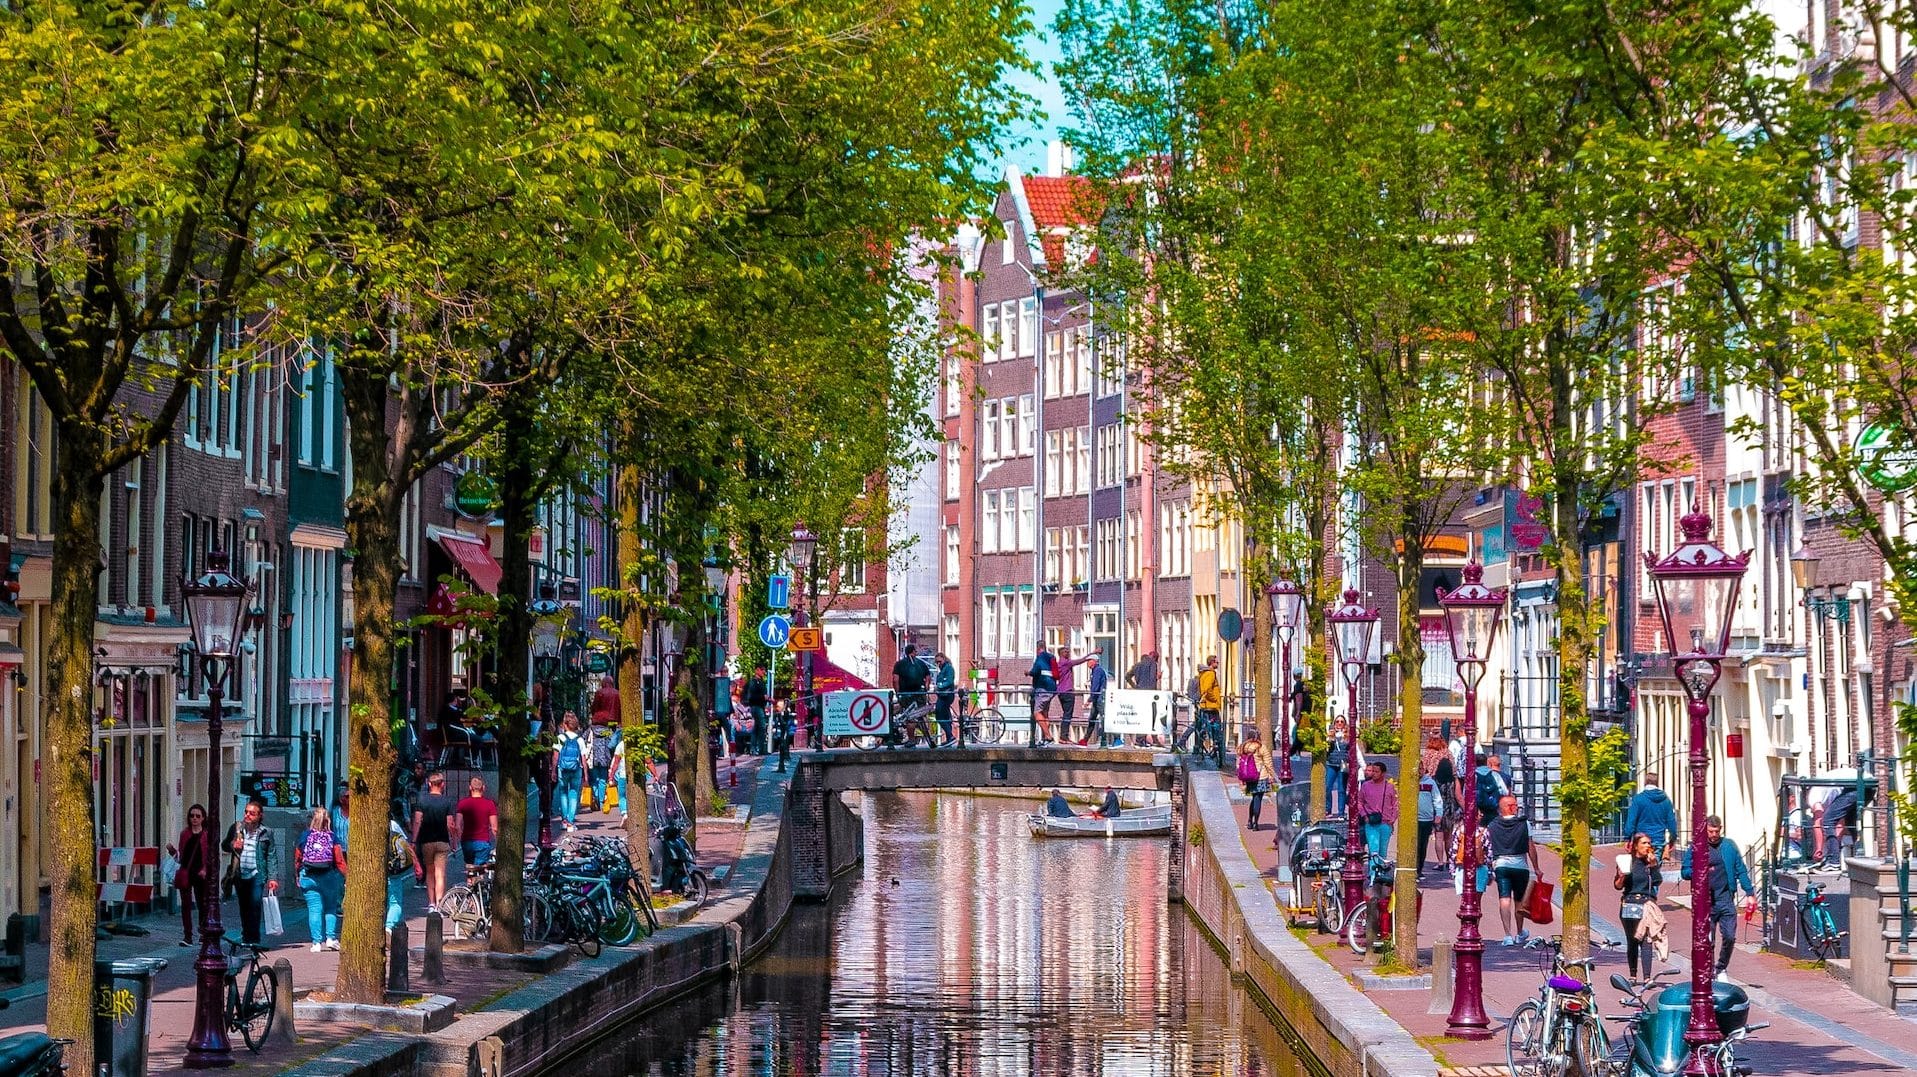 Conocido por sus boutiques y canales, Jordaan es una gran opción a la hora de elegir el mejor distrito para alojarse en Ámsterdam